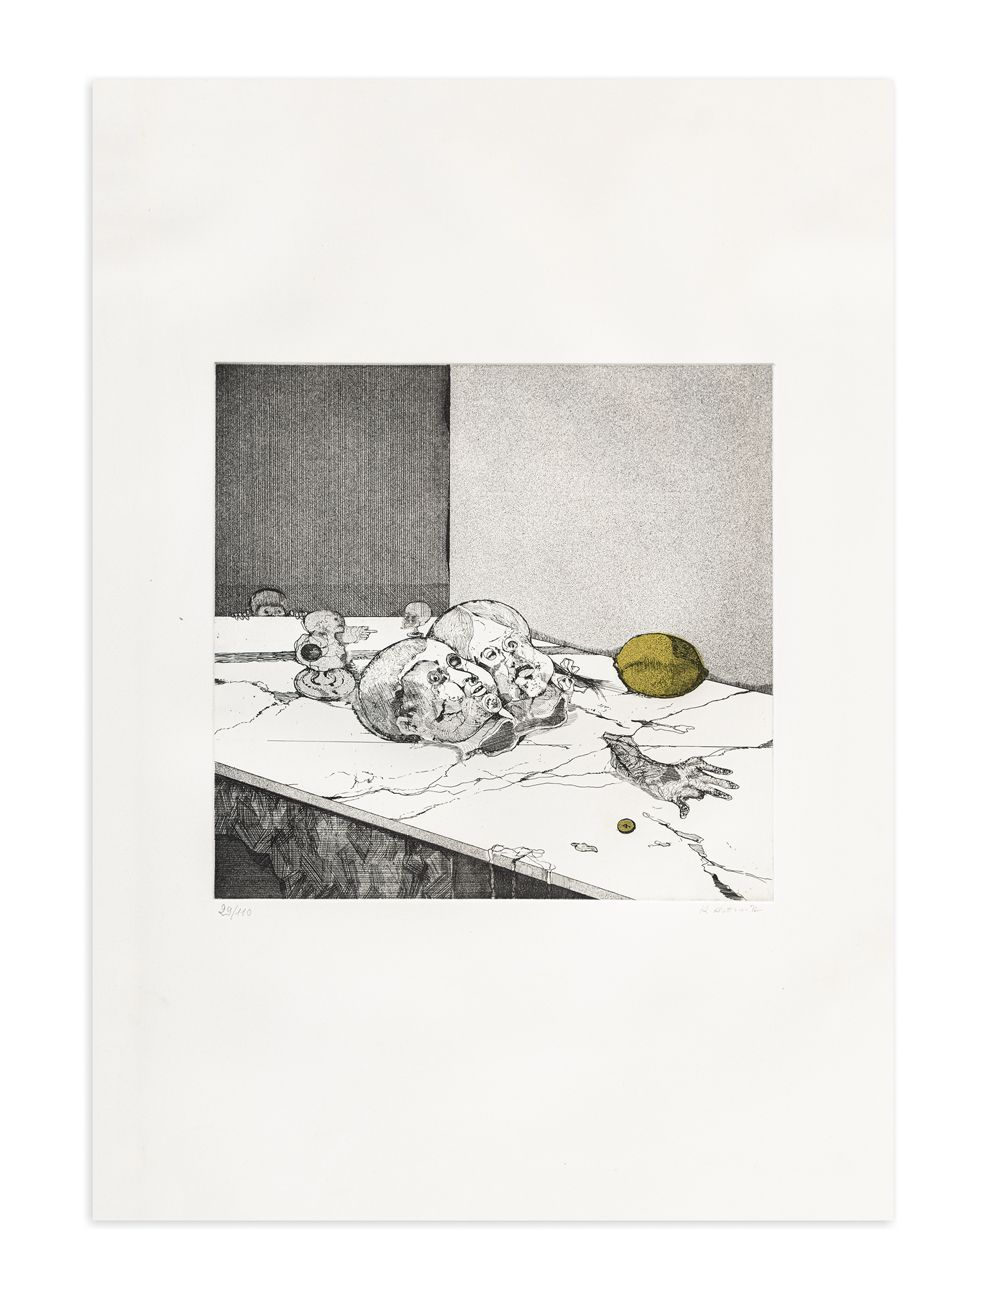 KARL PLATTNER (1919-1986) - Natura morta, 1972 双色蚀刻和水印

板材32x33厘米

片材70x50厘米

正面&hellip;